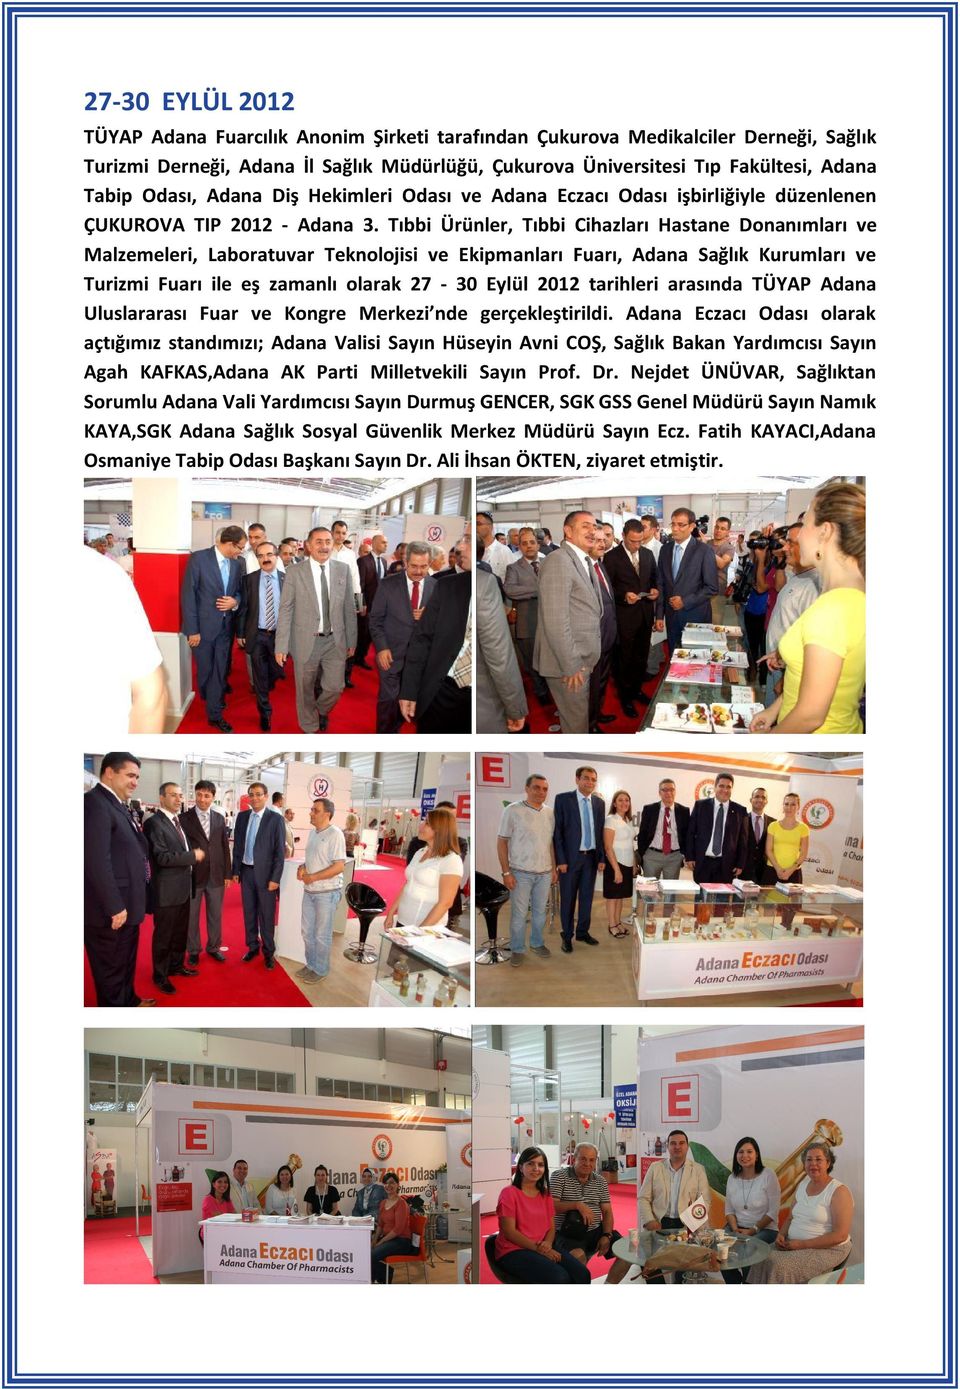 Tıbbi Ürünler, Tıbbi Cihazları Hastane Donanımları ve Malzemeleri, Laboratuvar Teknolojisi ve Ekipmanları Fuarı, Adana Sağlık Kurumları ve Turizmi Fuarı ile eş zamanlı olarak 27-30 Eylül 2012